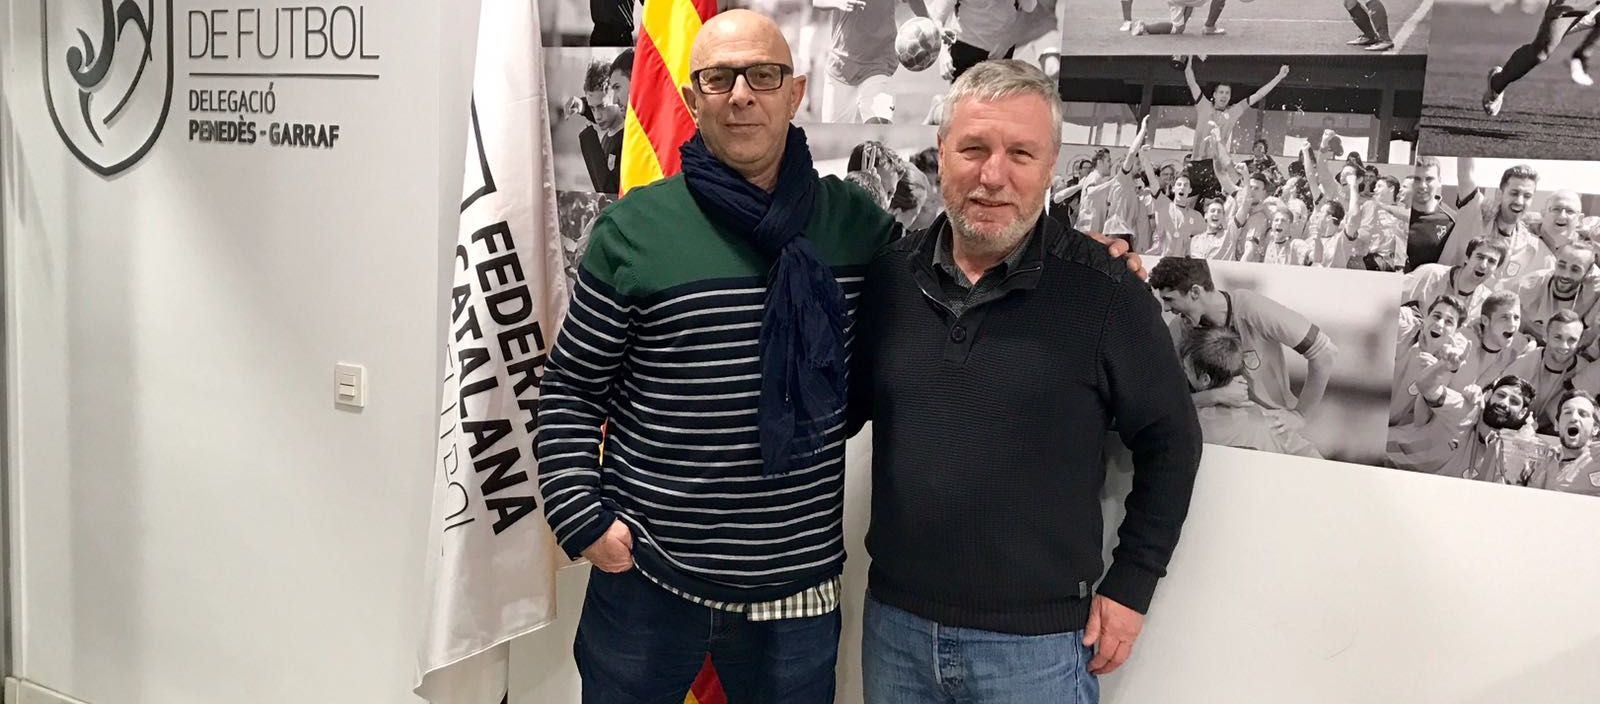 El president del FemFutbol Vilanova visita la delegació del Penedès-Garraf 